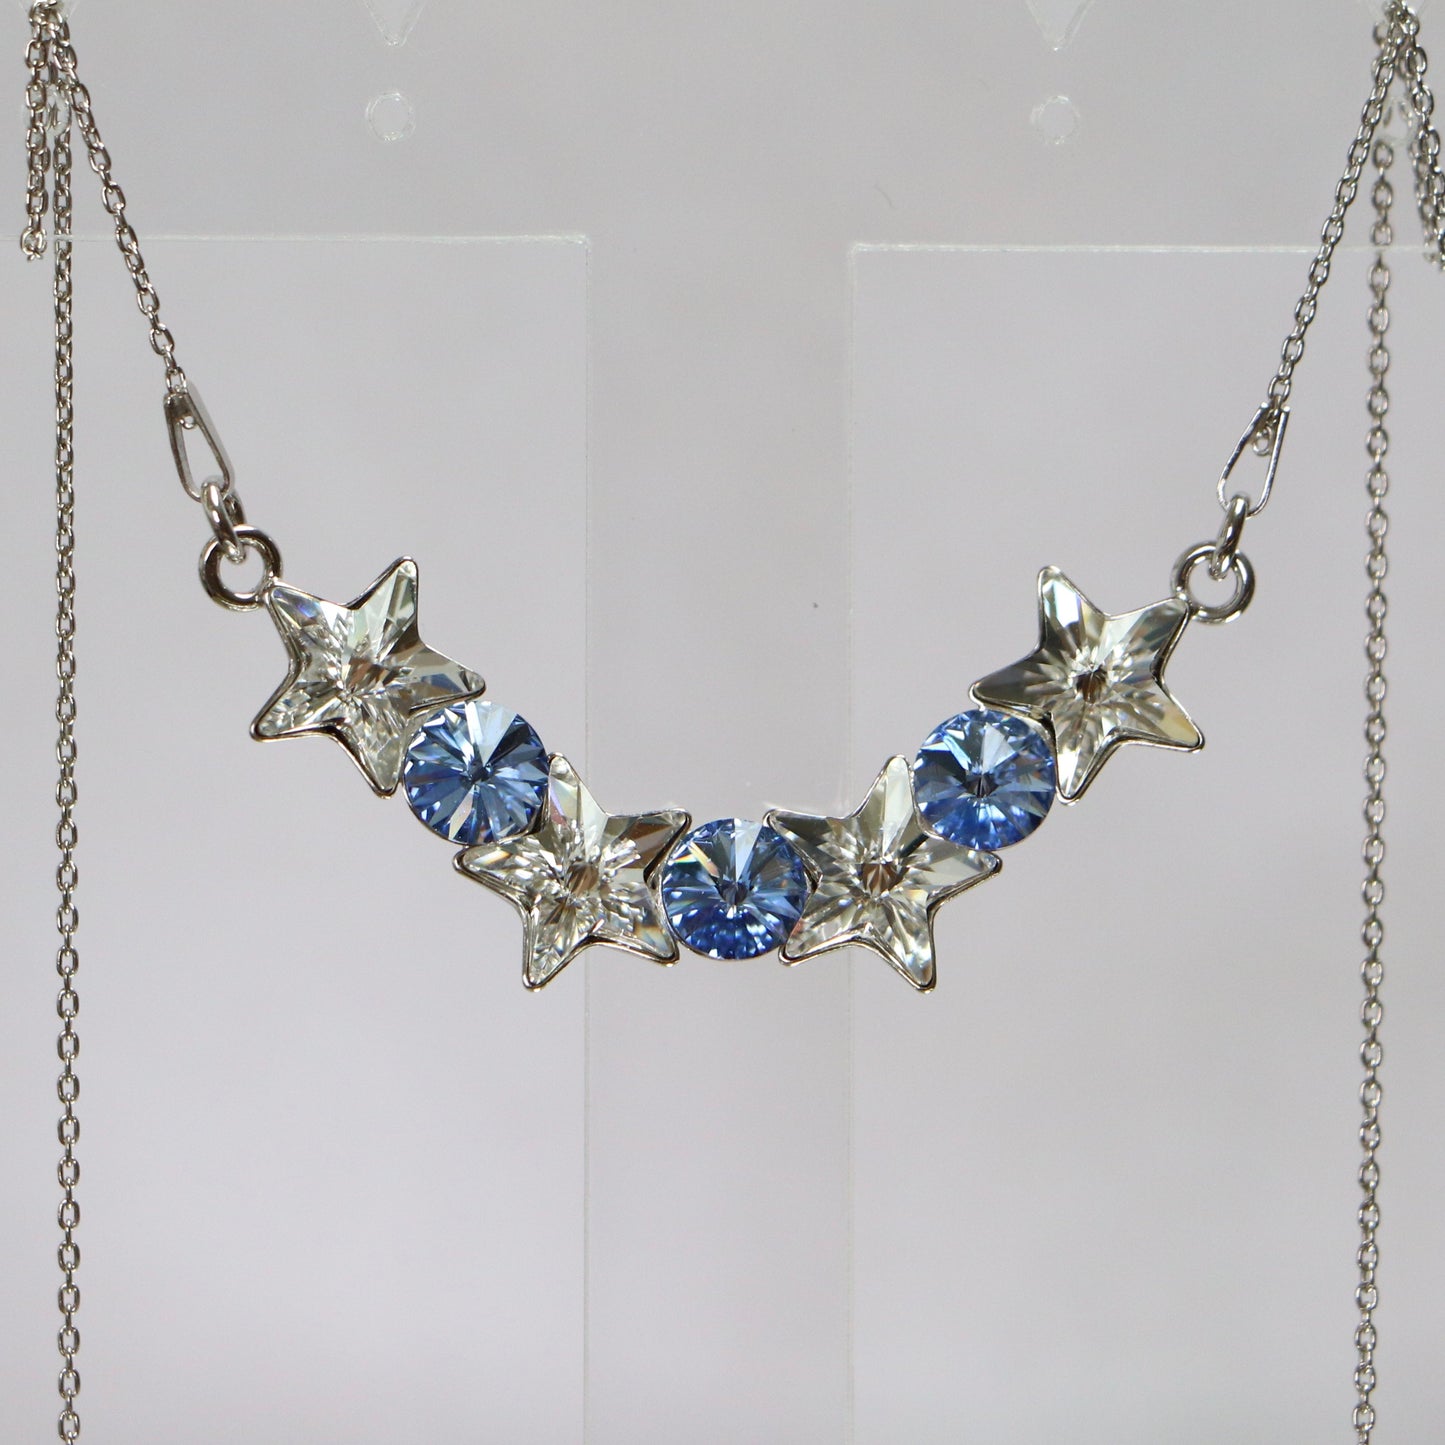 Boucles d'oreilles avec cristaux Swarovski, collection SEVER, cristal/bleu, argent rhodié